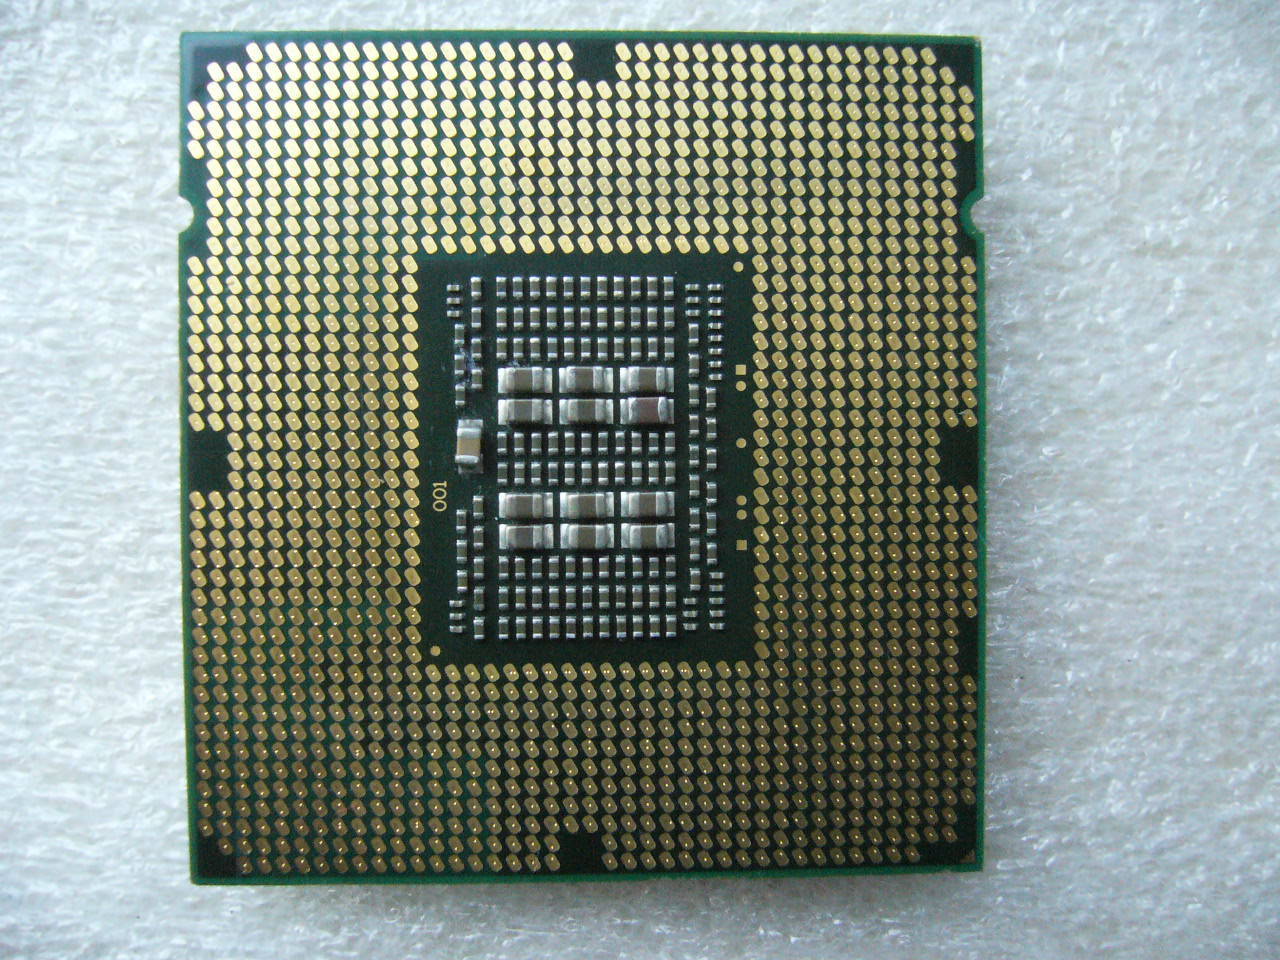 QTY 1x Intel CPU E5-2430L CPU 6-Cores 2.0Ghz 15MB LGA1356 SR0LL TDP 60W - zum Schließen ins Bild klicken